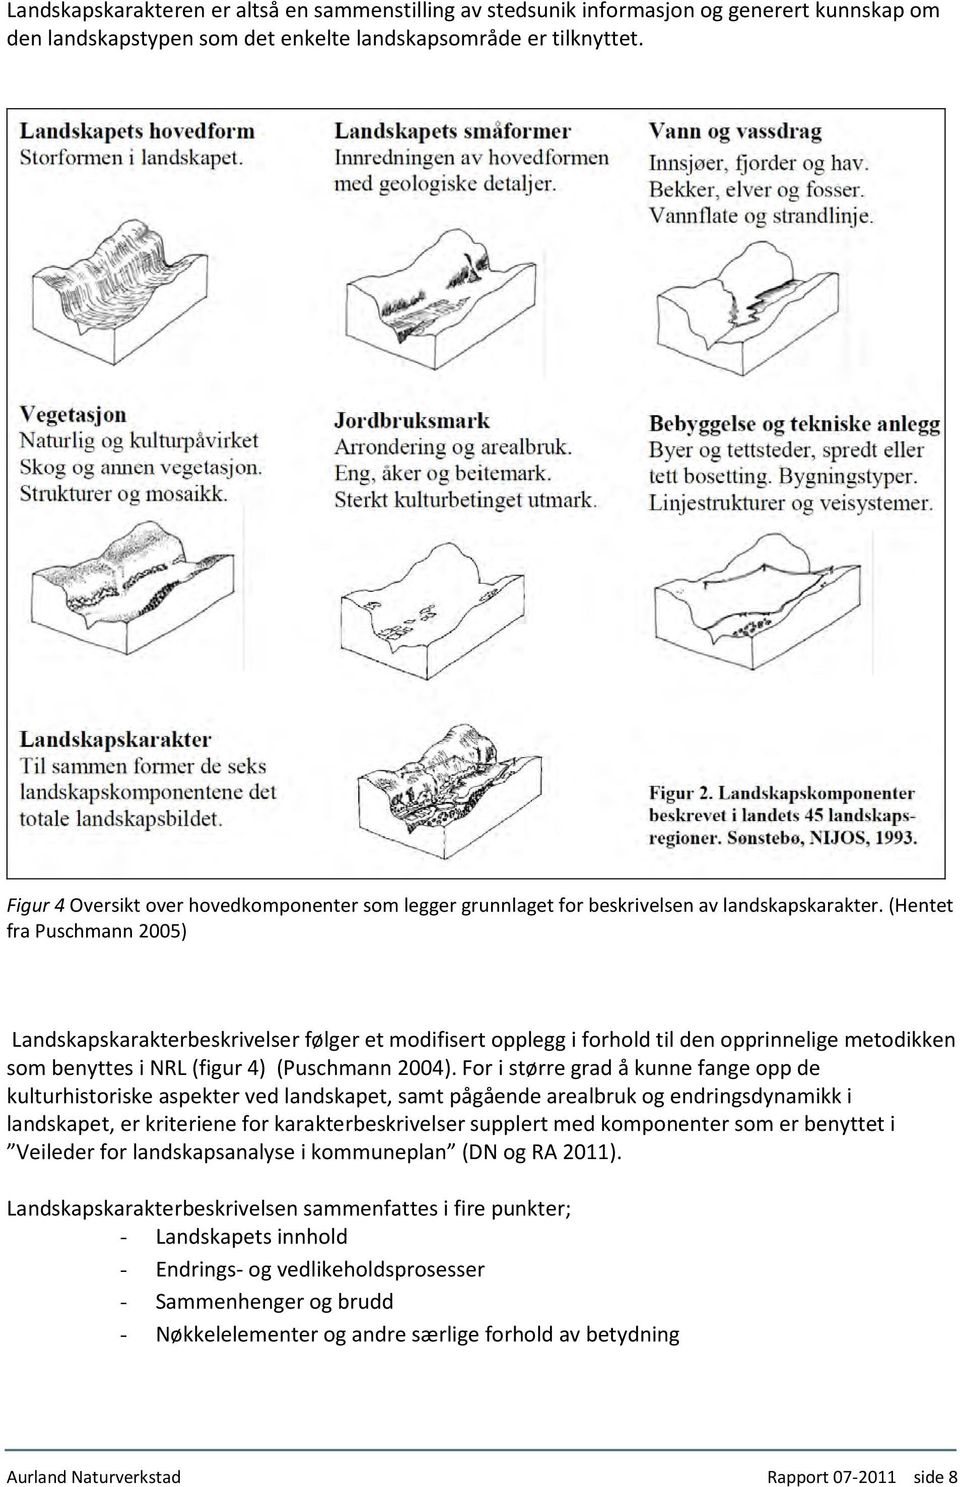 (Hentet fra Puschmann 2005) Landskapskarakterbeskrivelser følger et modifisert opplegg i forhold til den opprinnelige metodikken som benyttes i NRL (figur 4) (Puschmann 2004).